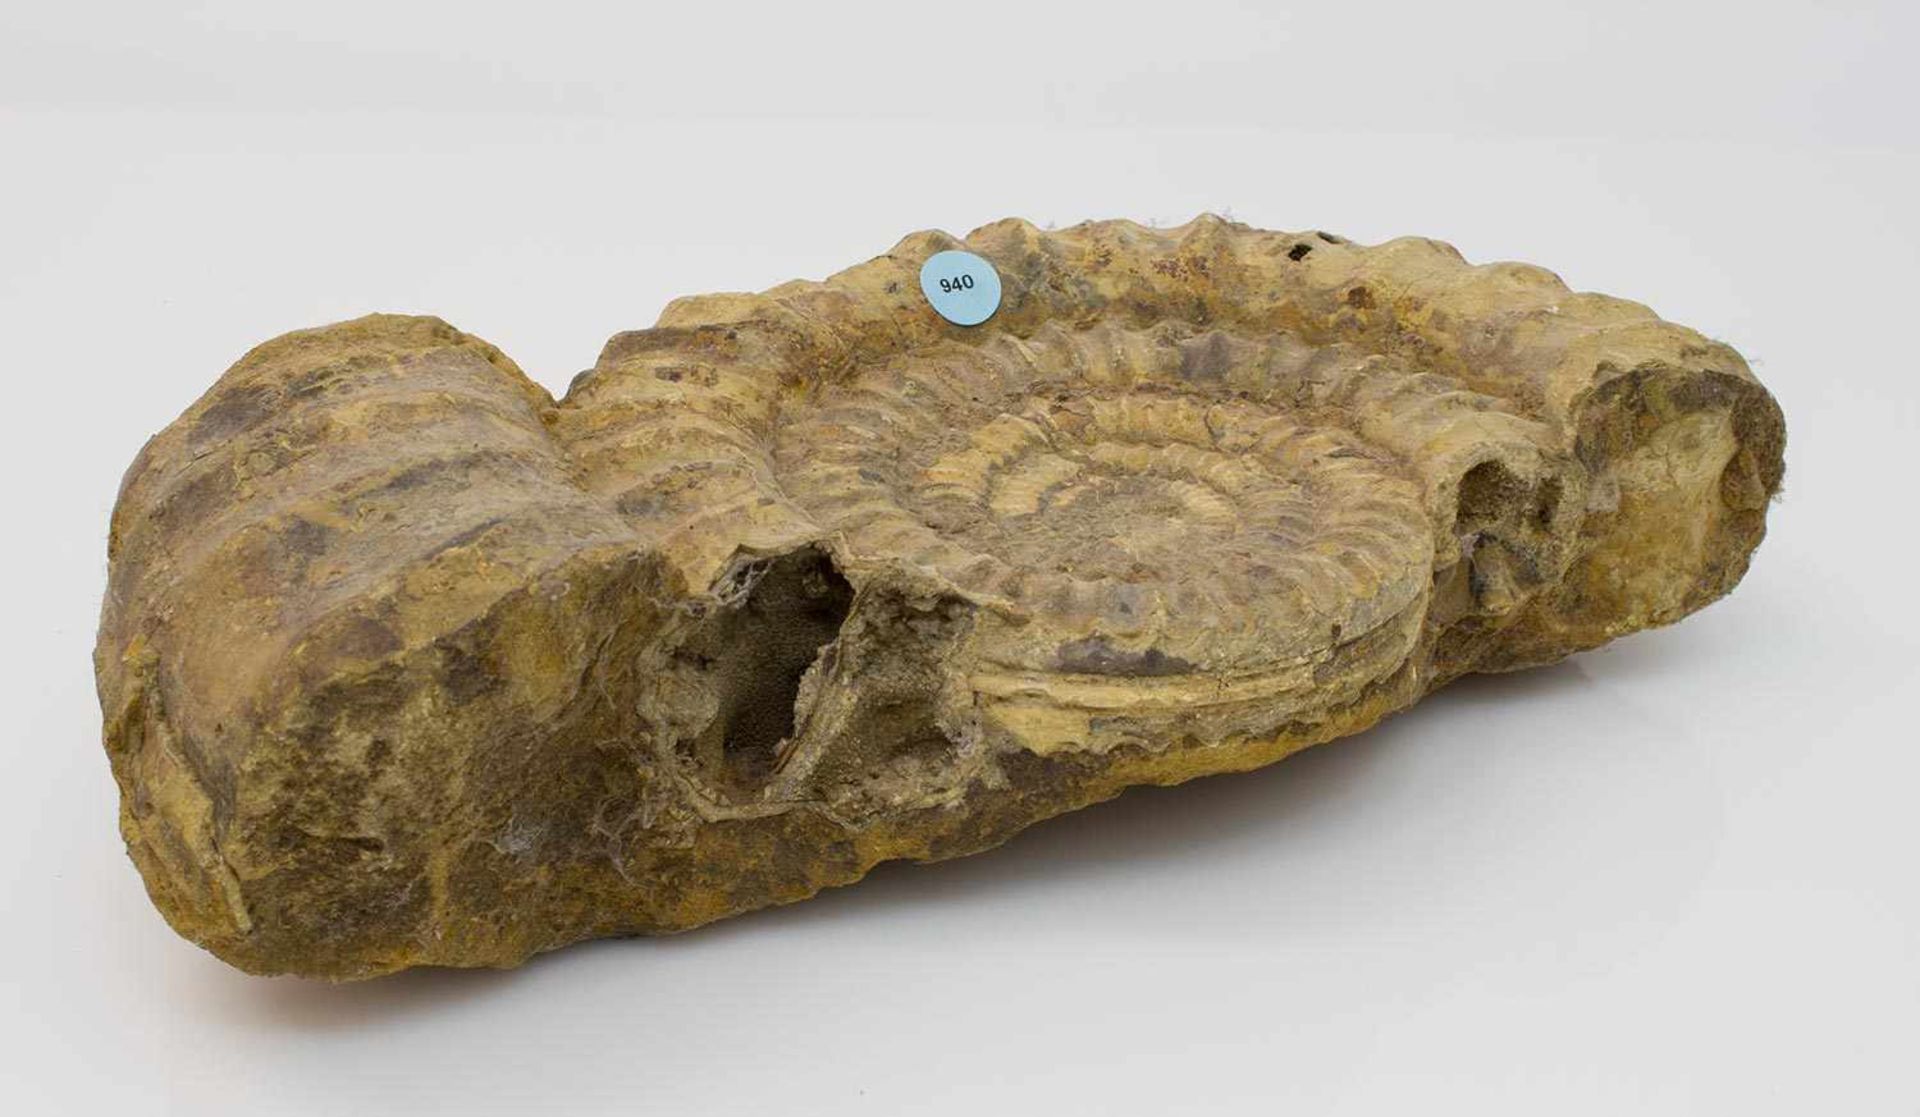 Versteinerung eines Ammoniten bzw. Ammonshorn, 36 x 21 cm